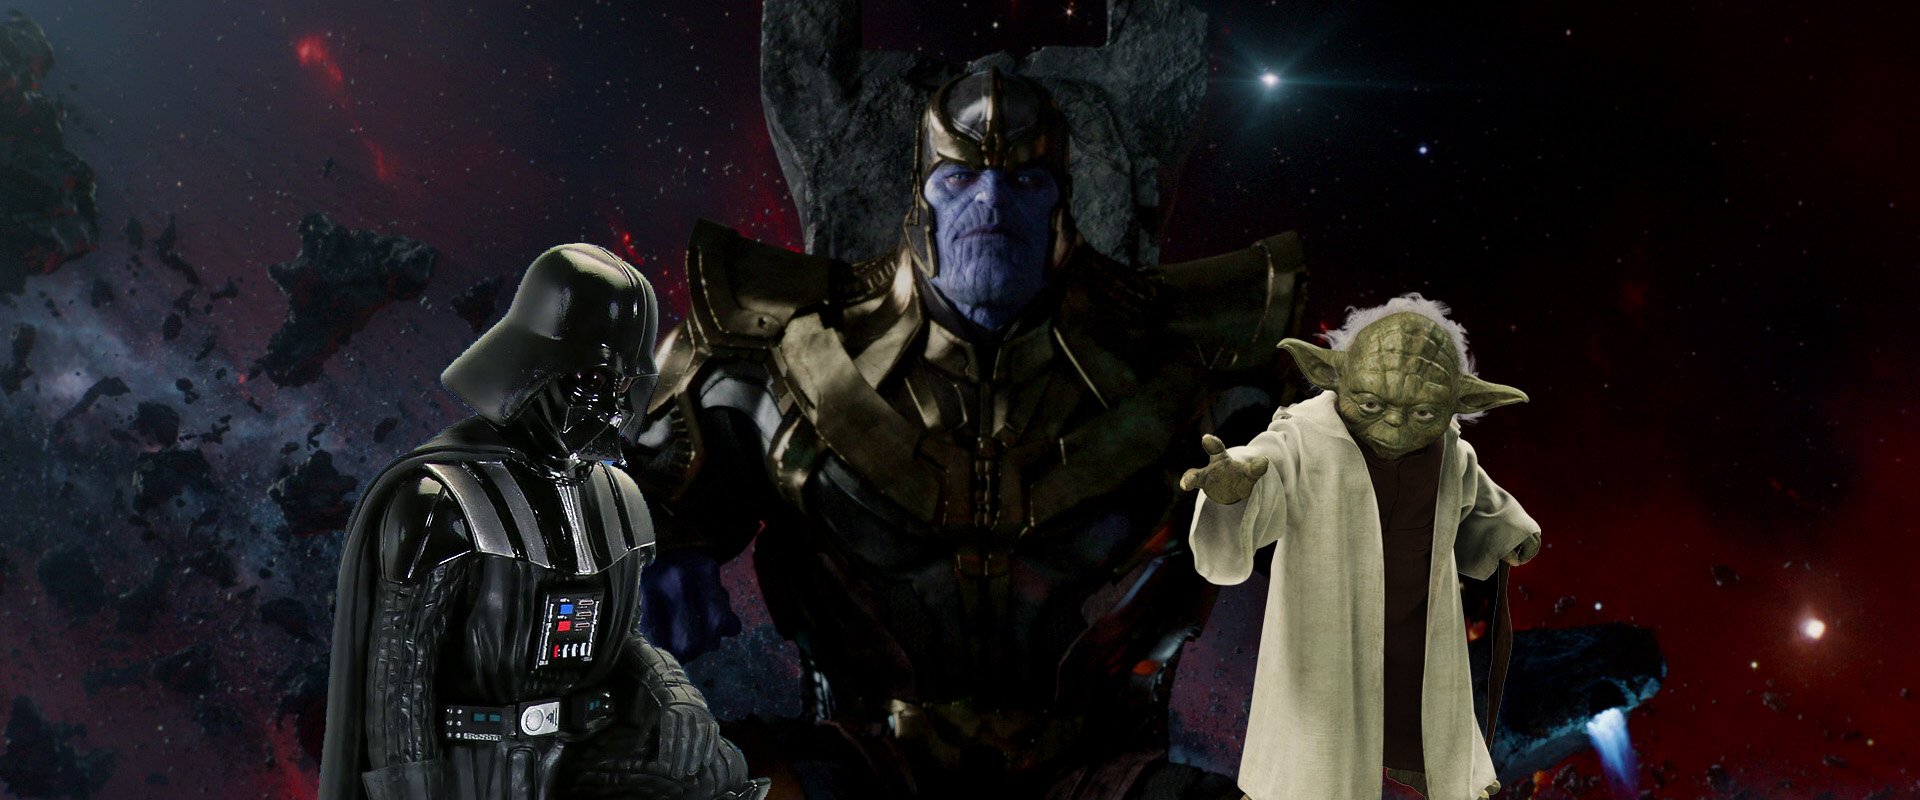 Thanos się rodzi, Moc truchleje. Kto rządzi w popkulturze – Gwiezdne Wojny czy Marvel?